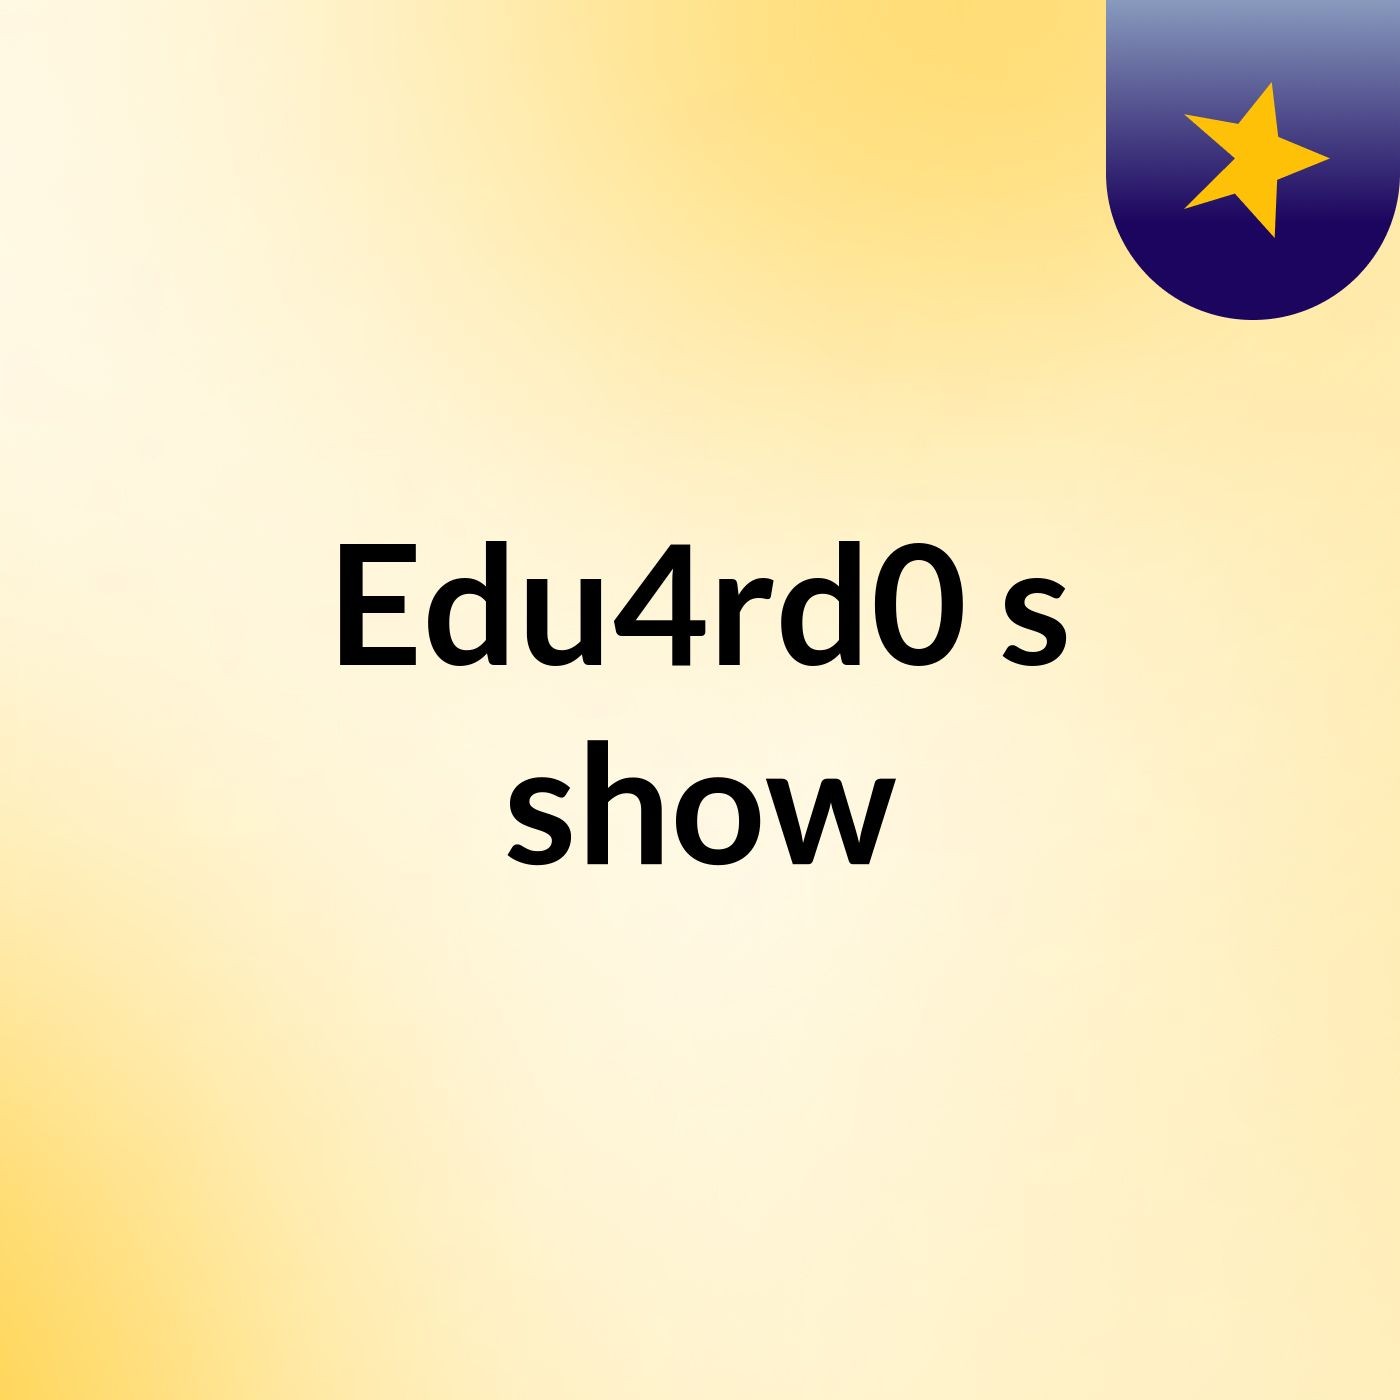 Edu4rd0's show